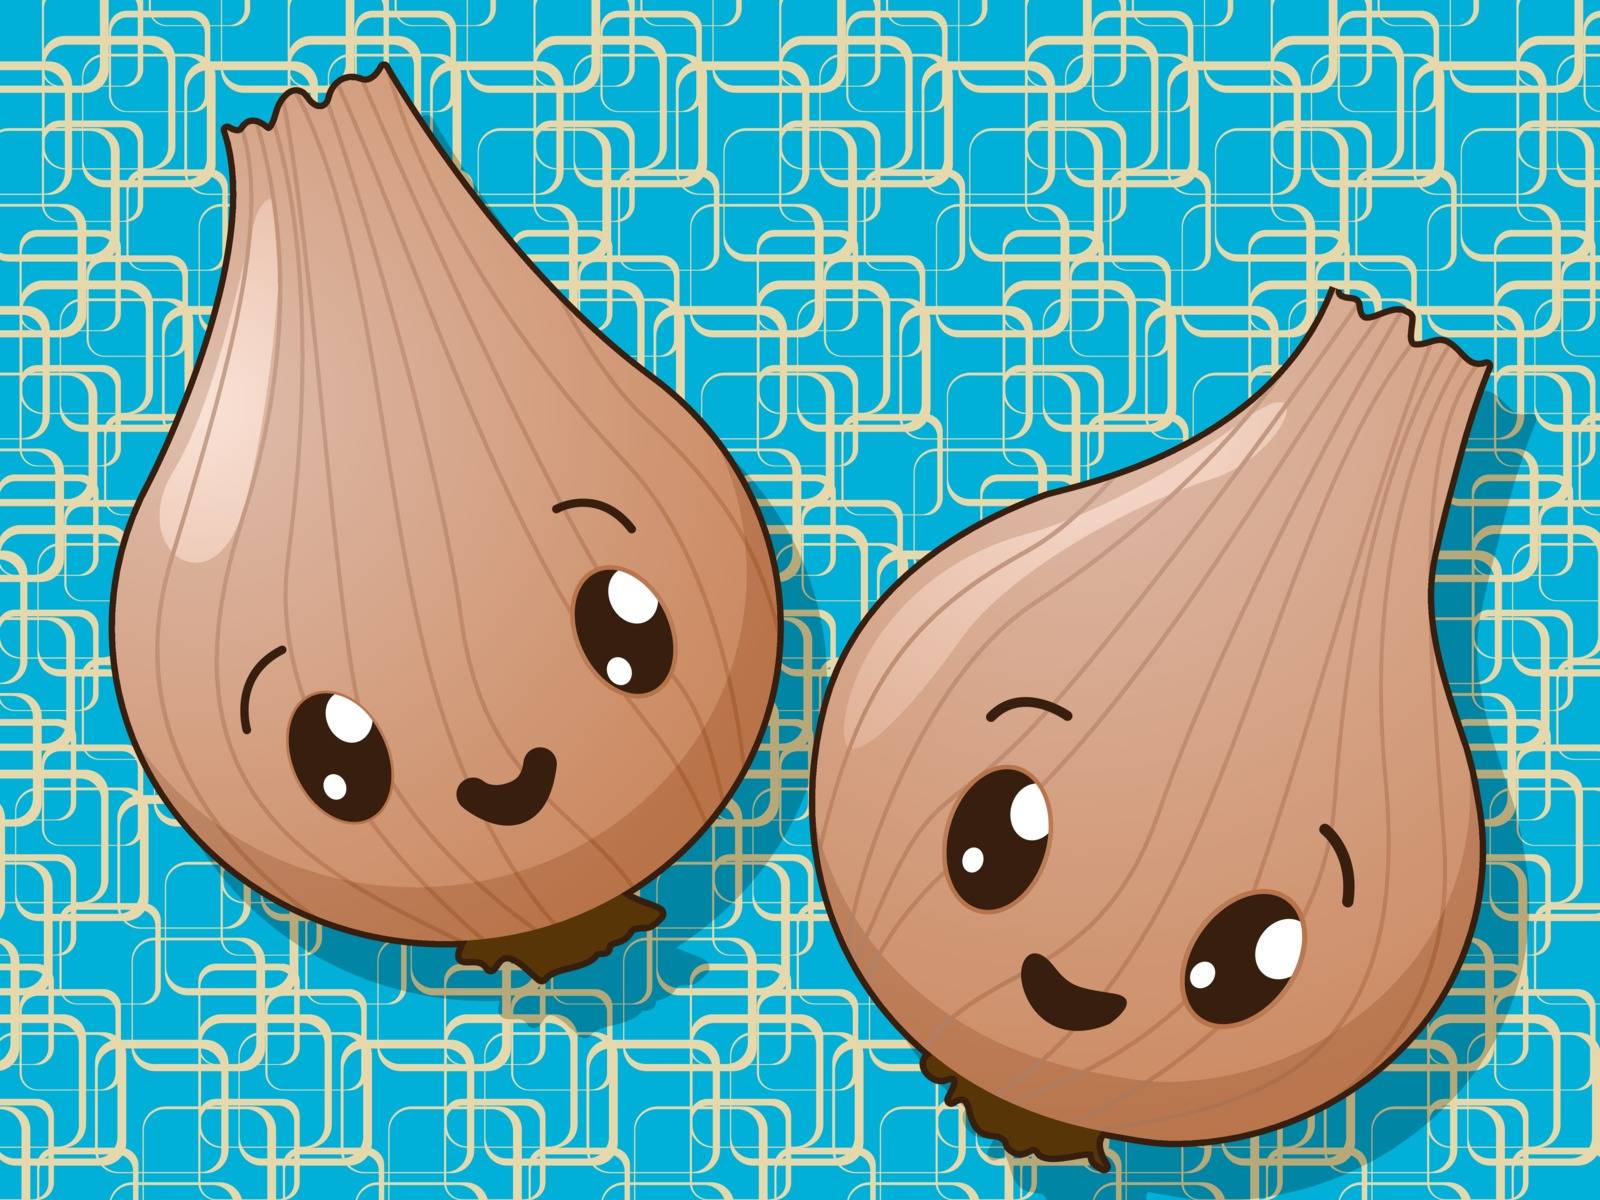 Kawaii onion icons by Lirch